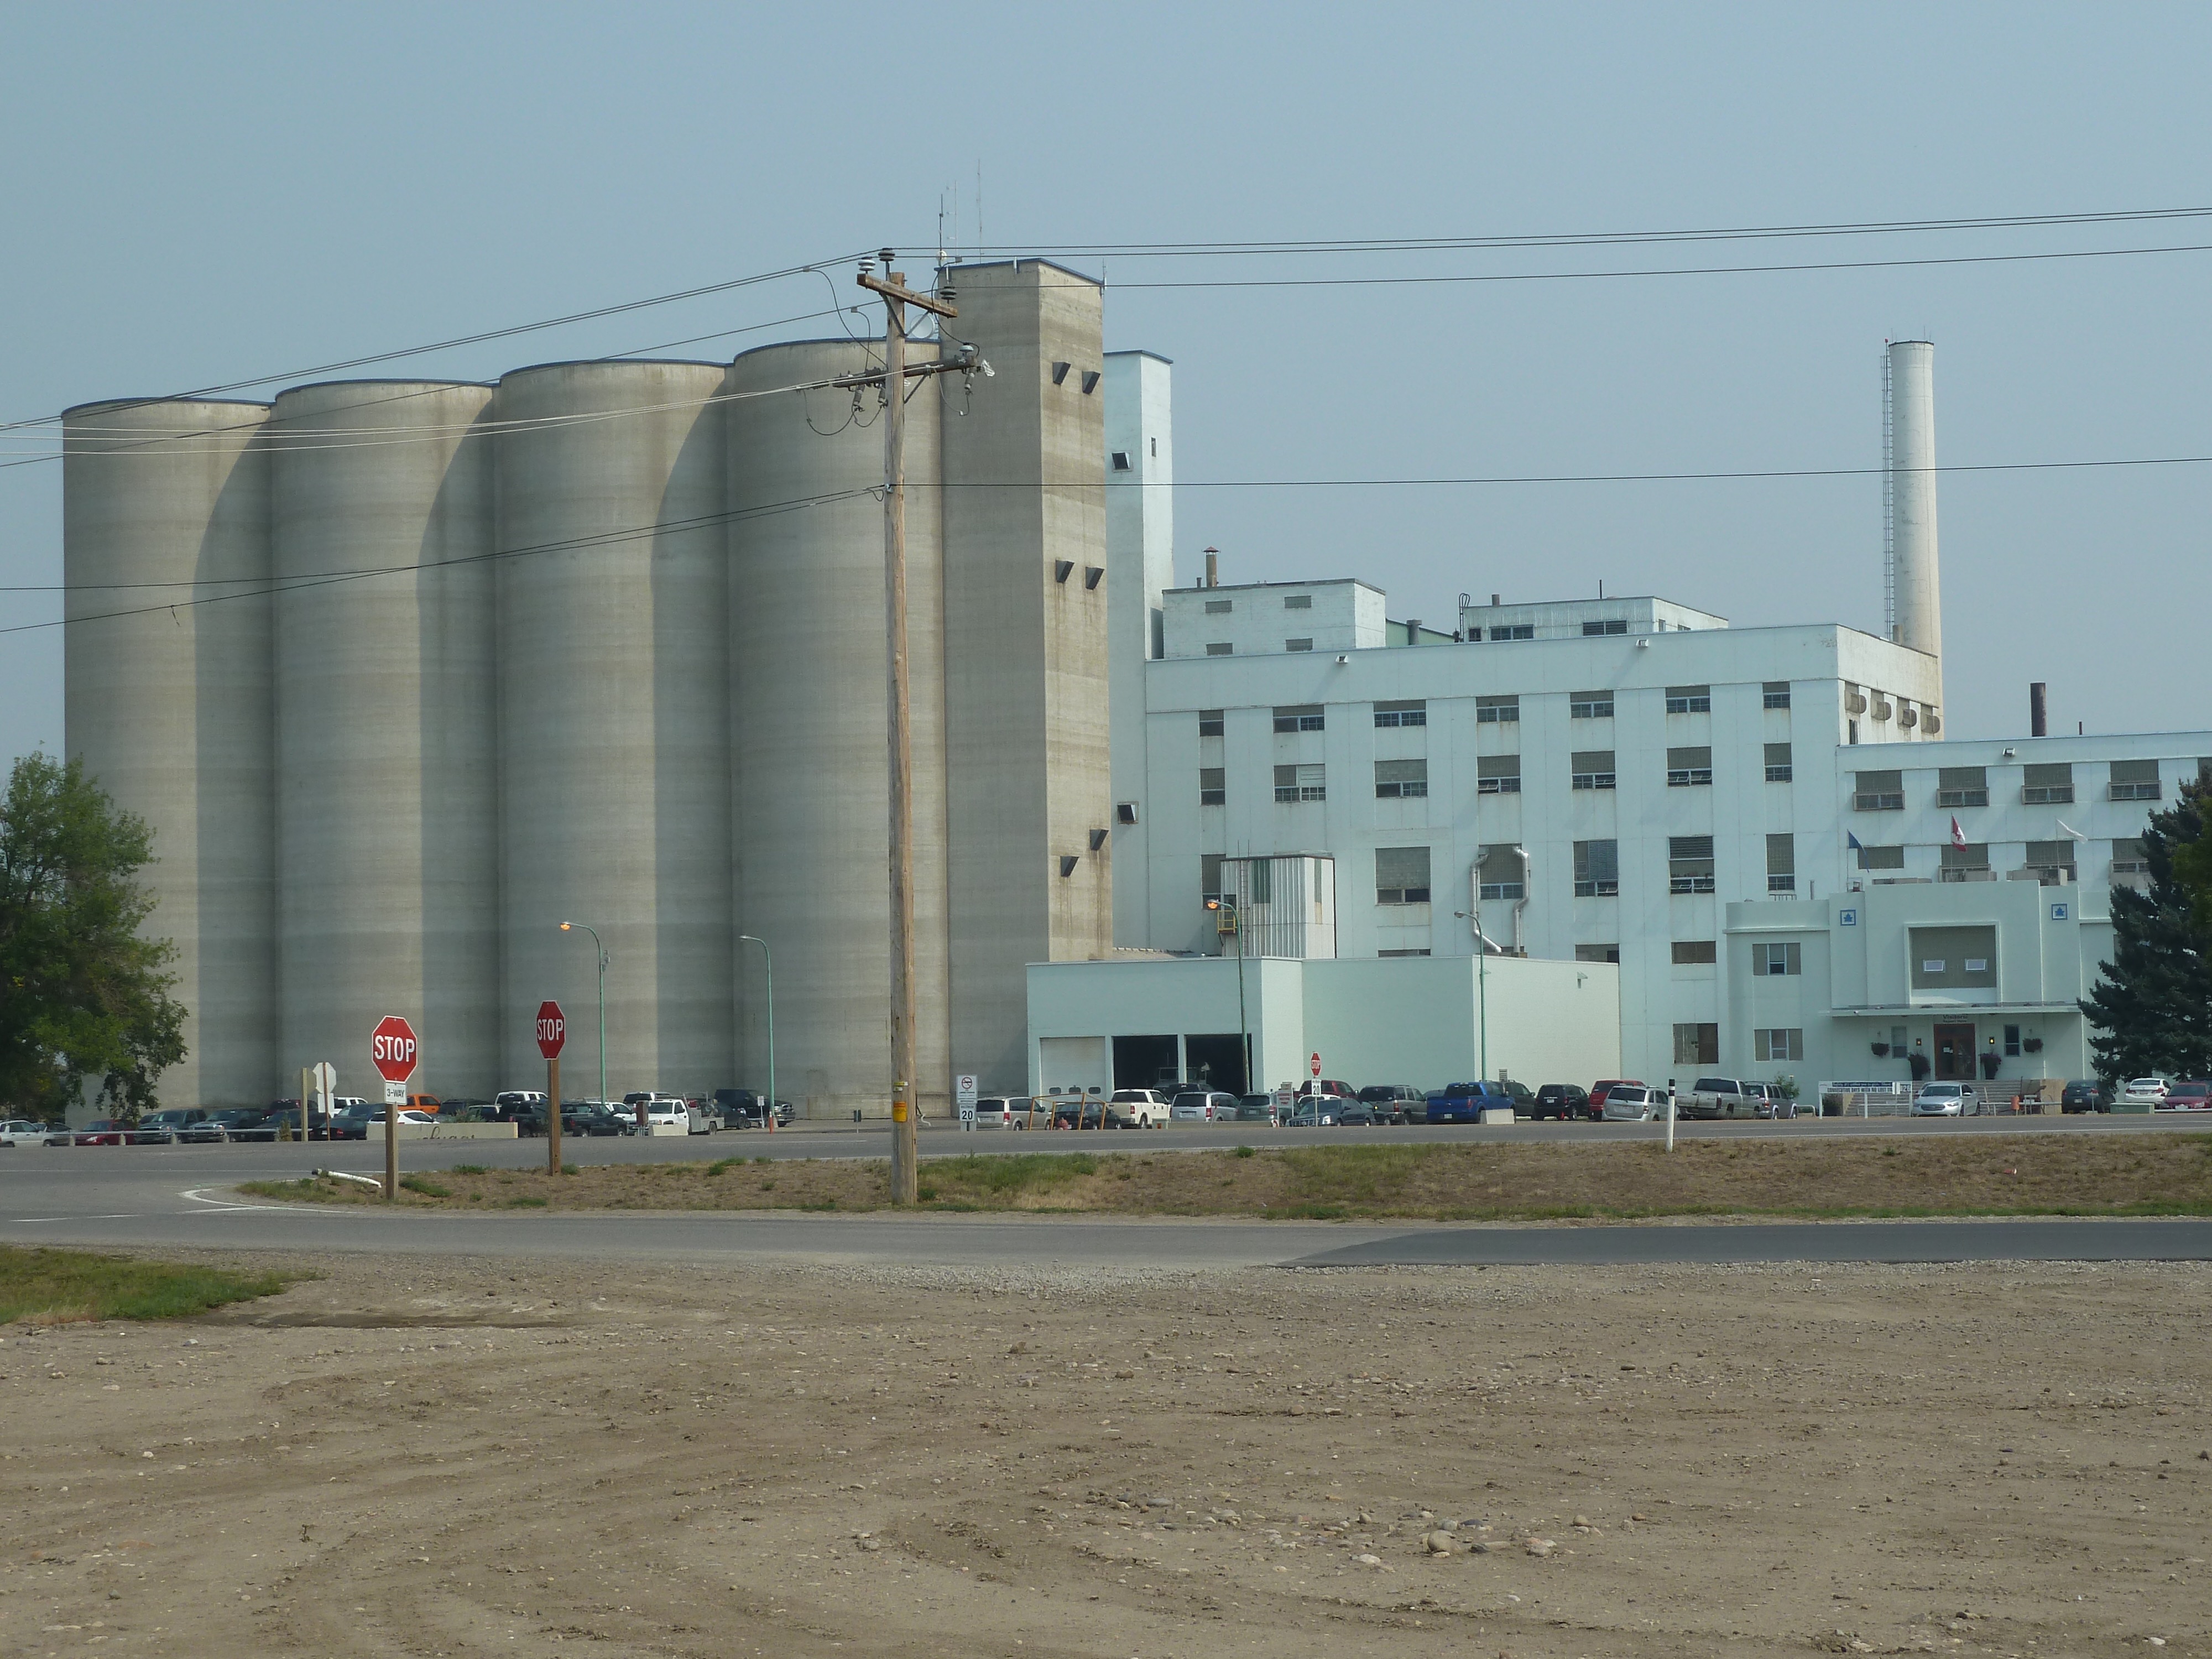 a sugar beet factory